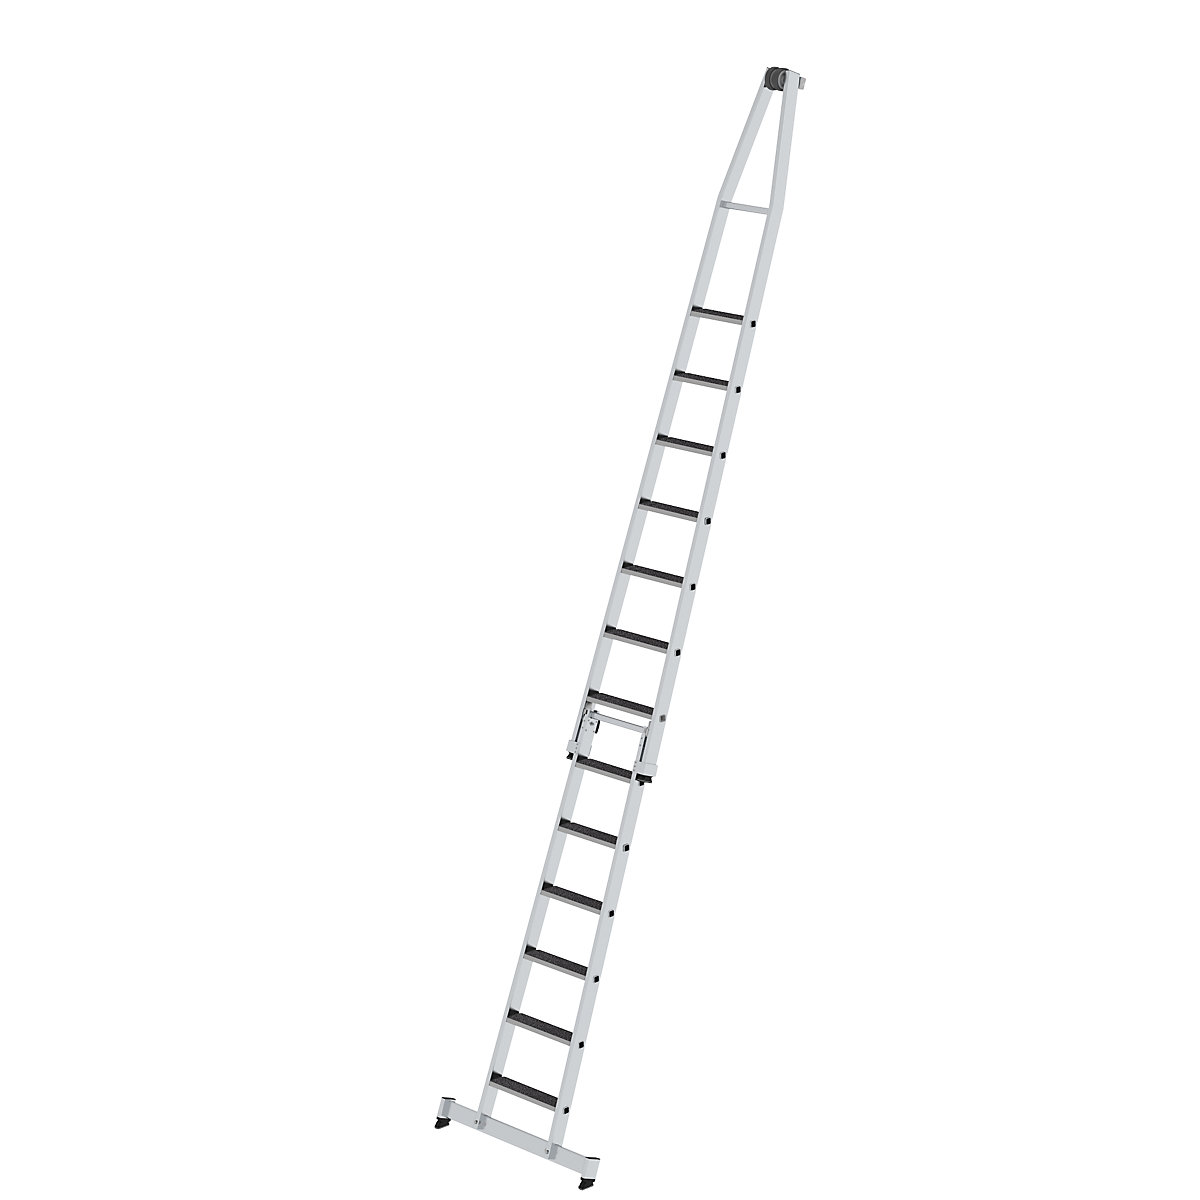 Escada para limpar vidros – MUNK, com apoio para os pés, 2 peças, 13 degraus-8